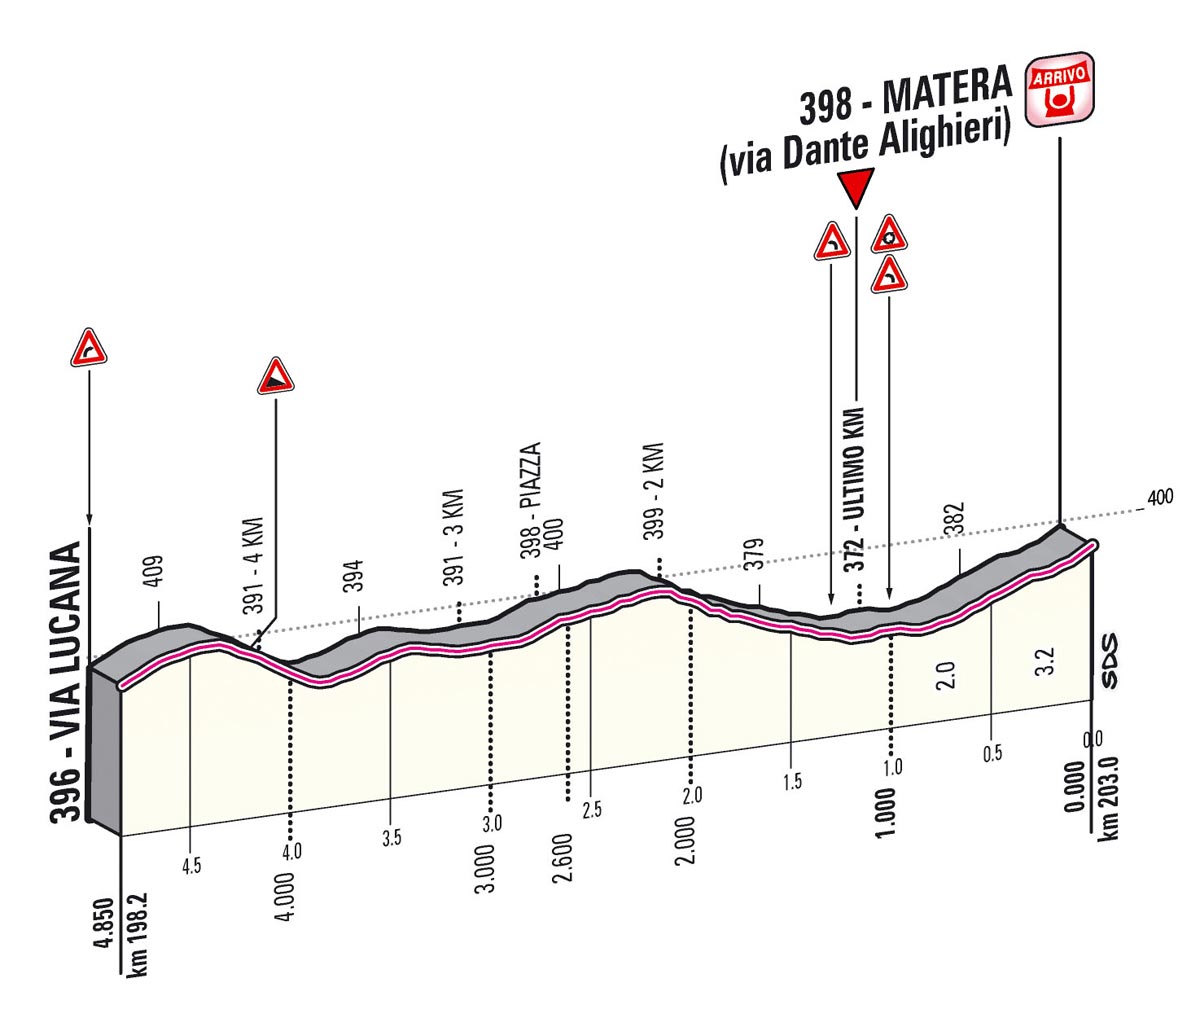 Giro d'Italia 2013 Stage 5 last kms